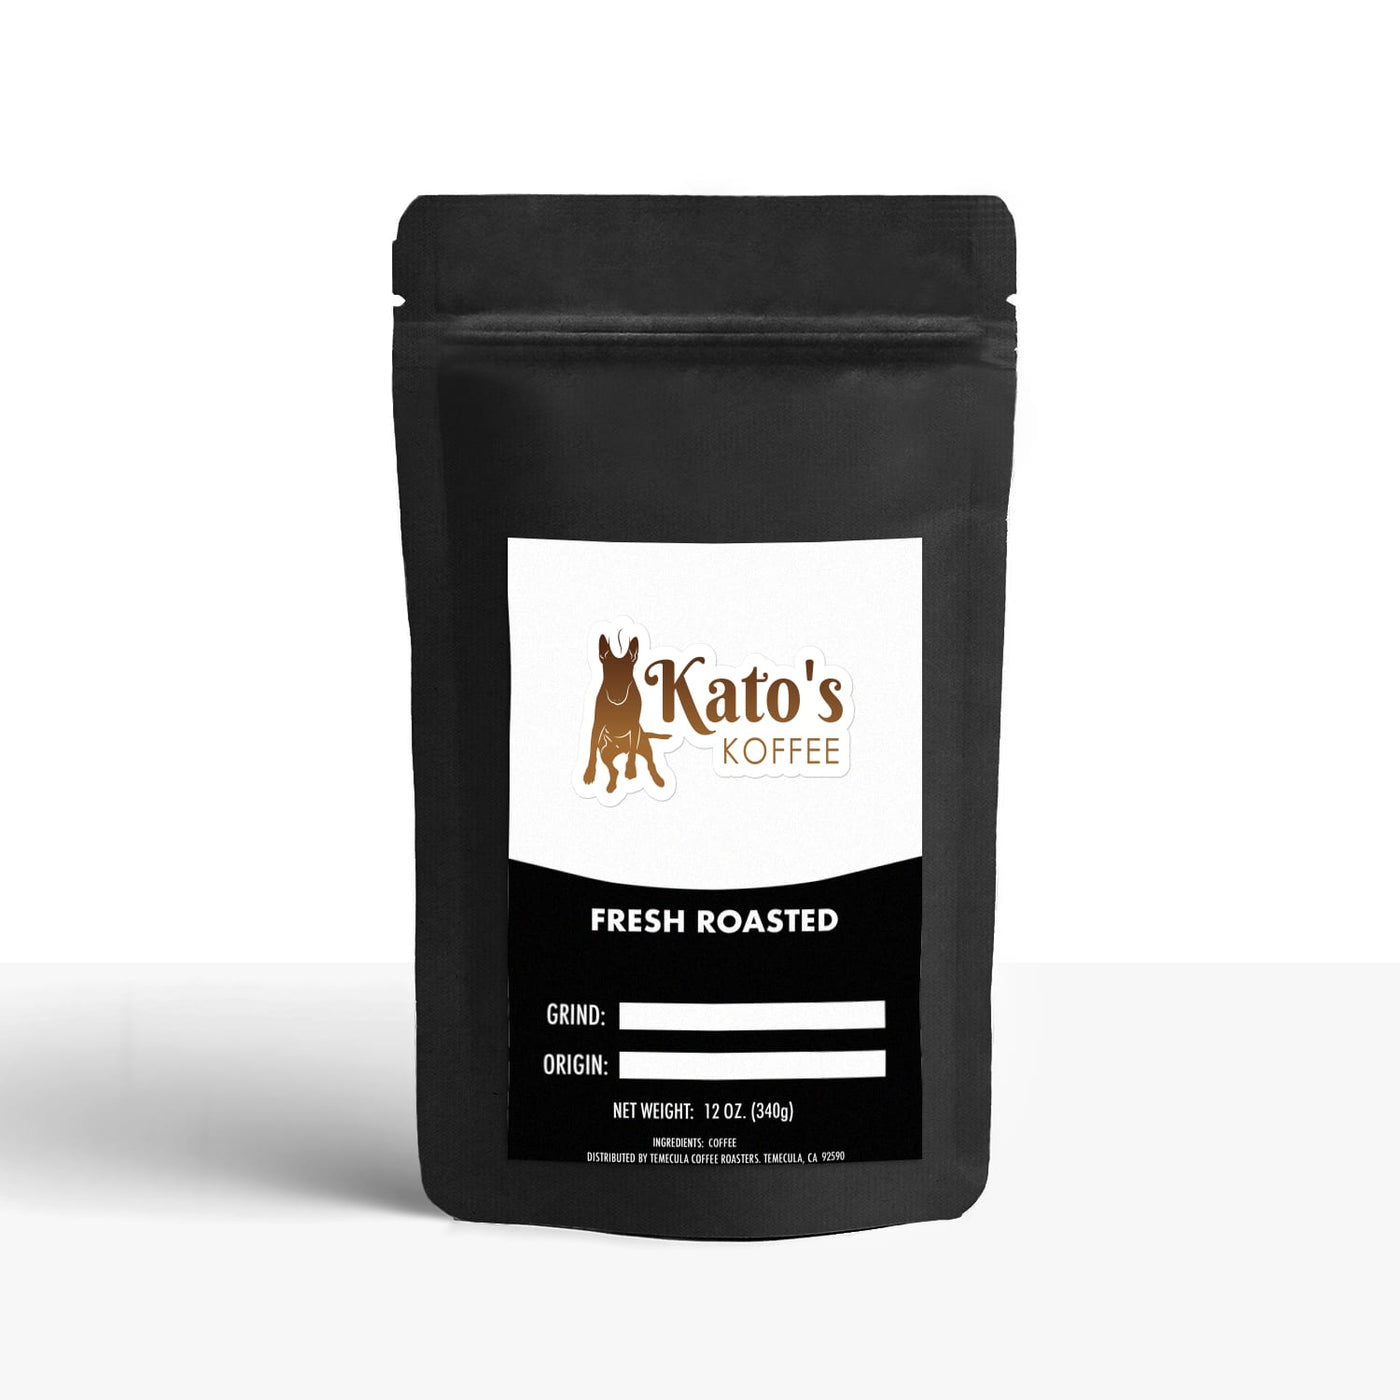 Best Sellers Sample Pack (6) - Kato's Koffee